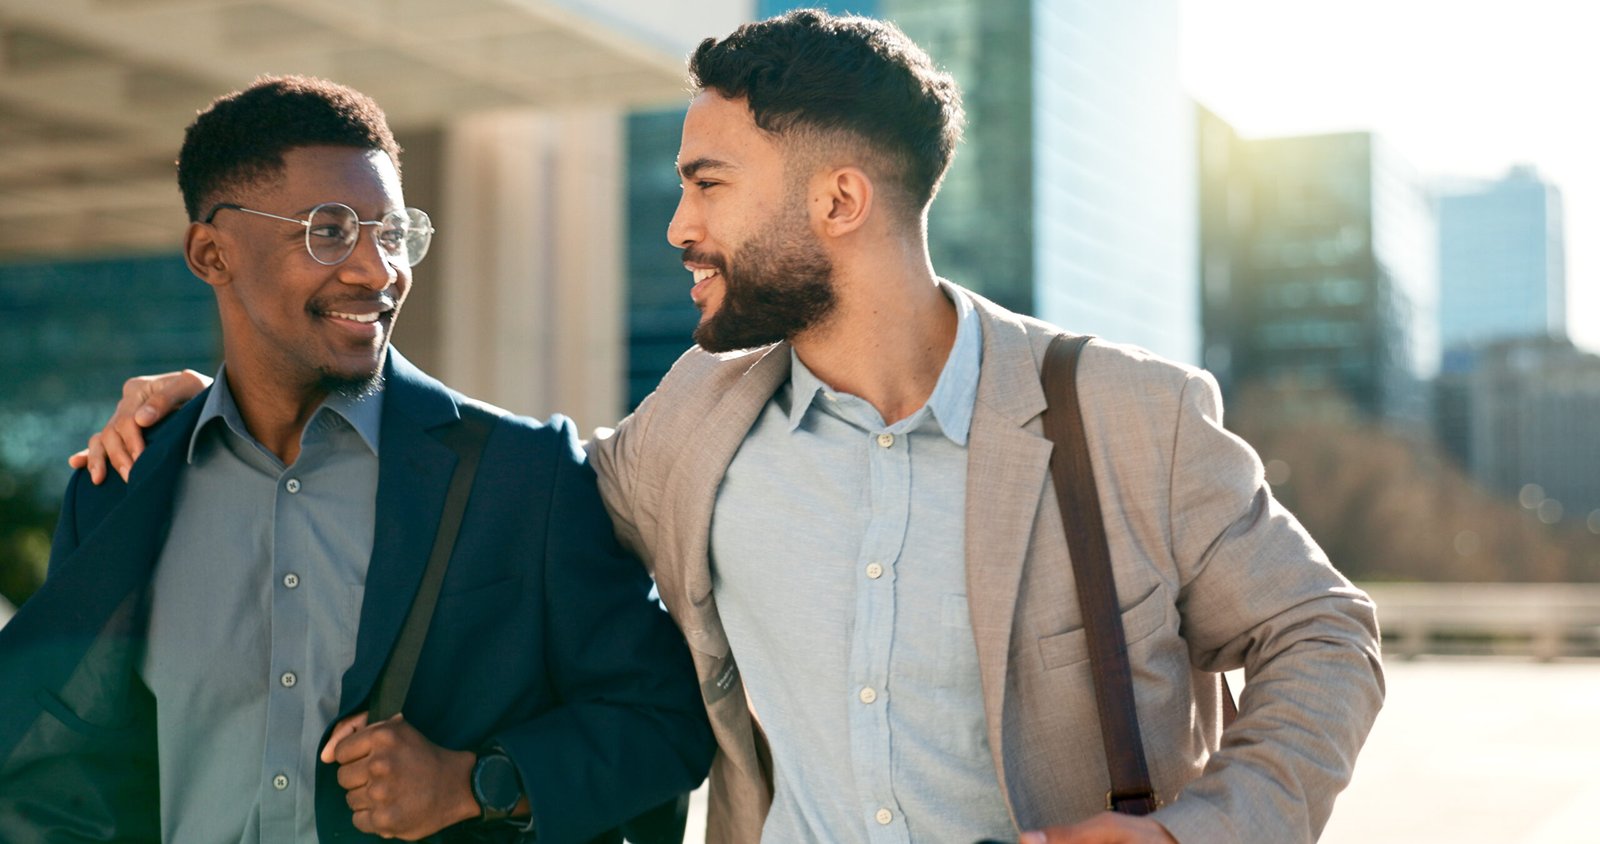 Un homme en souriant chaleureusement à un collègue lors d'une interaction amicale, illustrant l'importance des connexions personnelles dans les affaires.